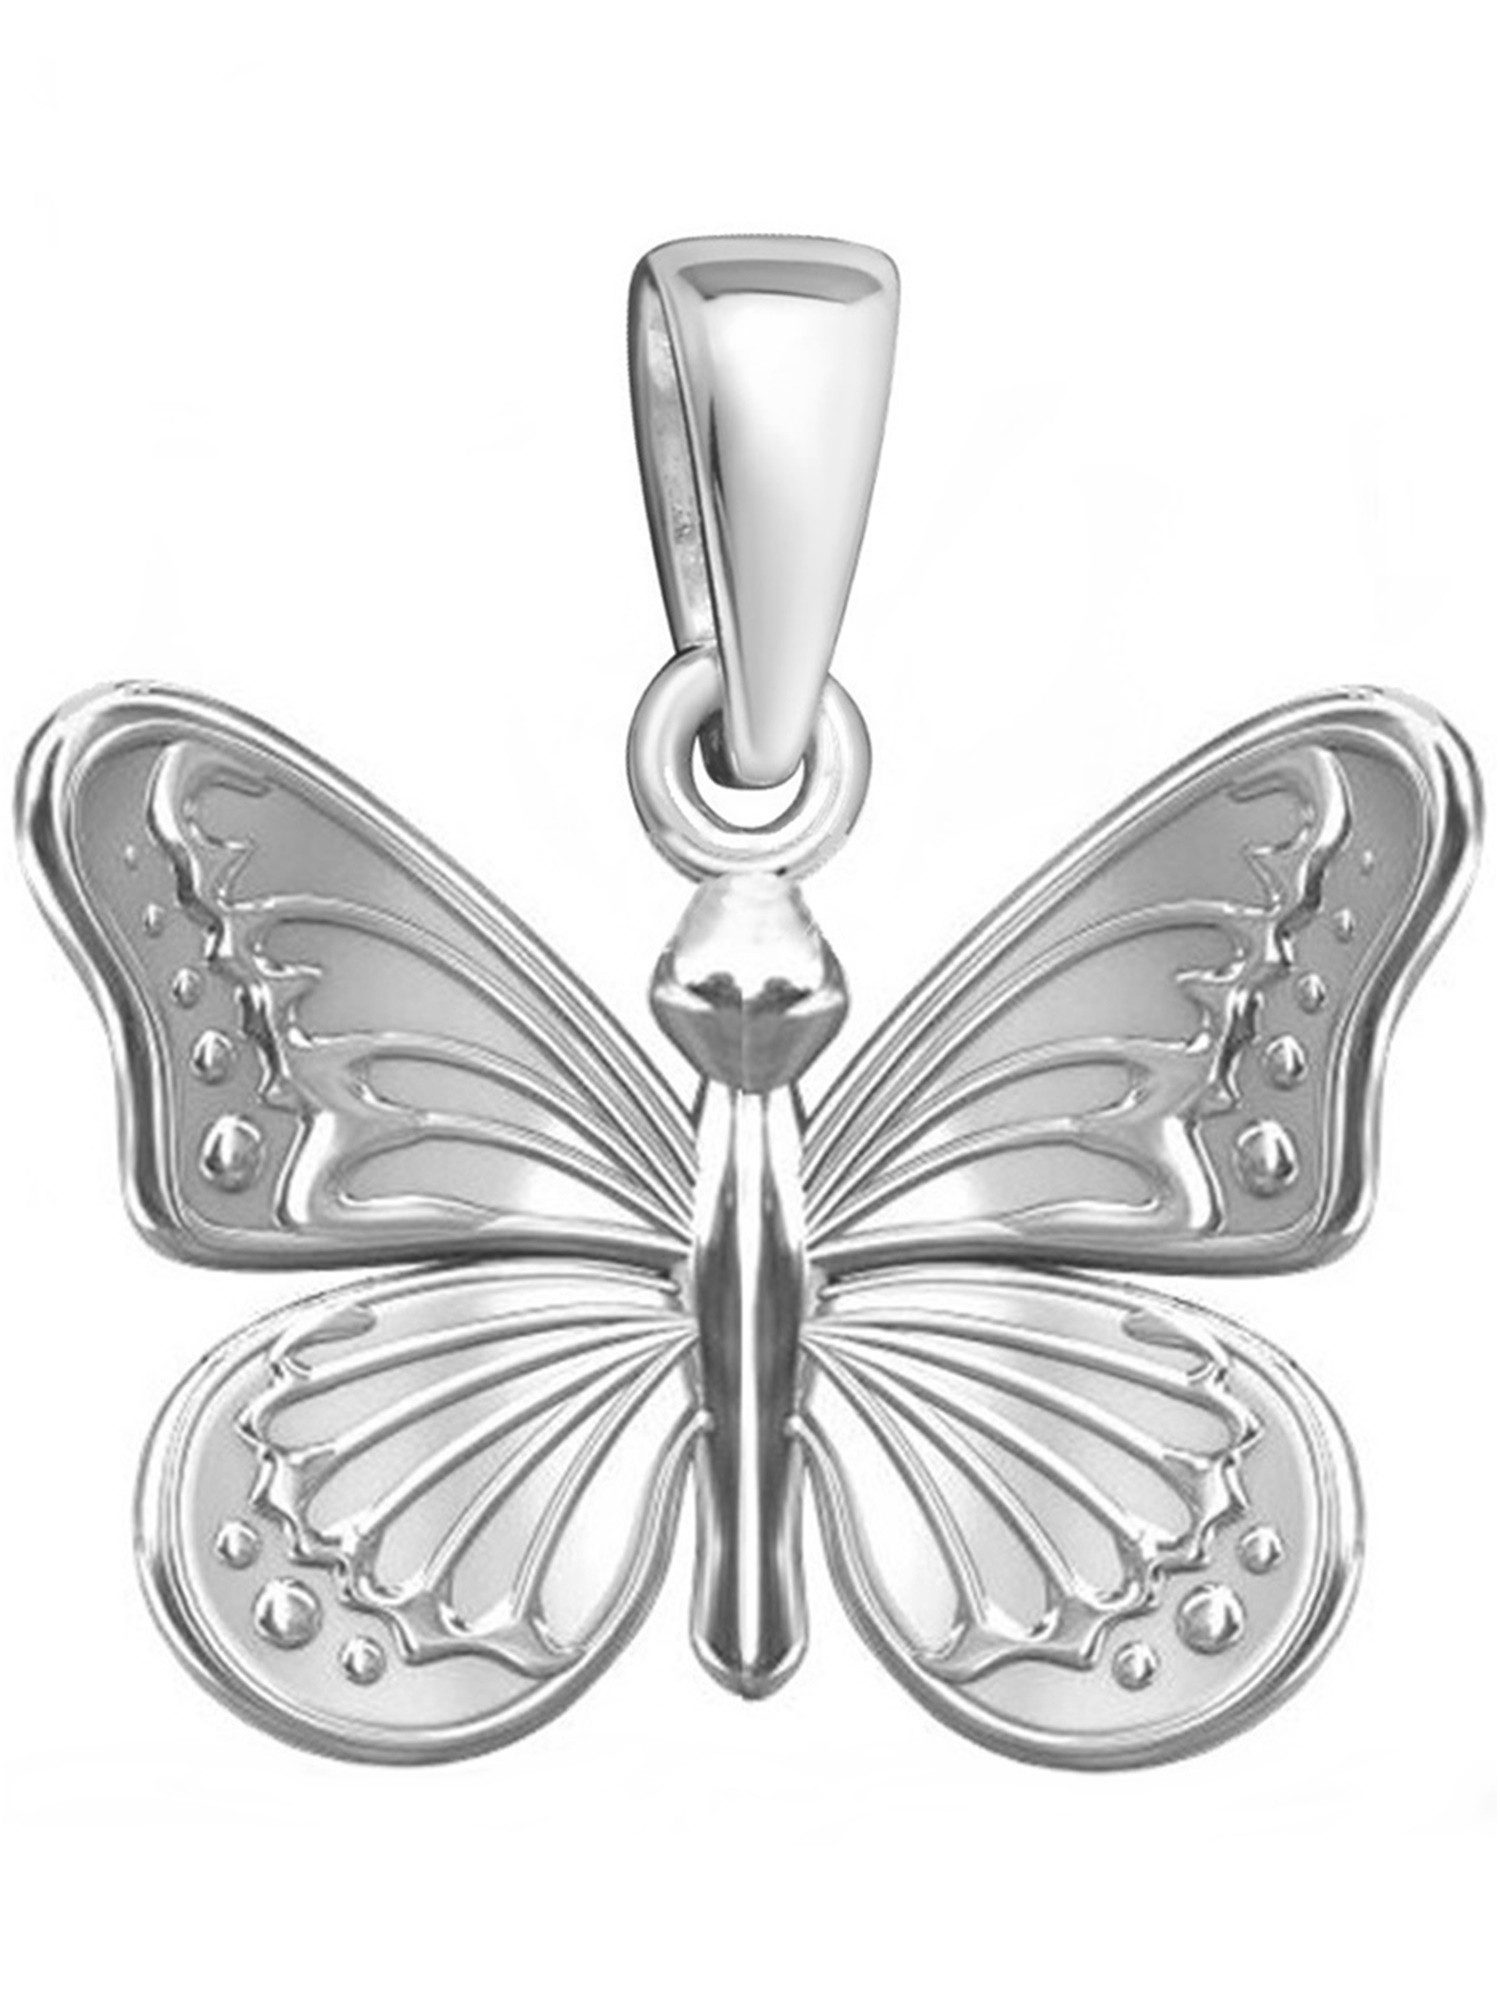 Goldene Hufeisen Kettenanhänger Schmetterling Kettenanhänger 925 Sterling Silber (1 Stück, inkl. Etui)